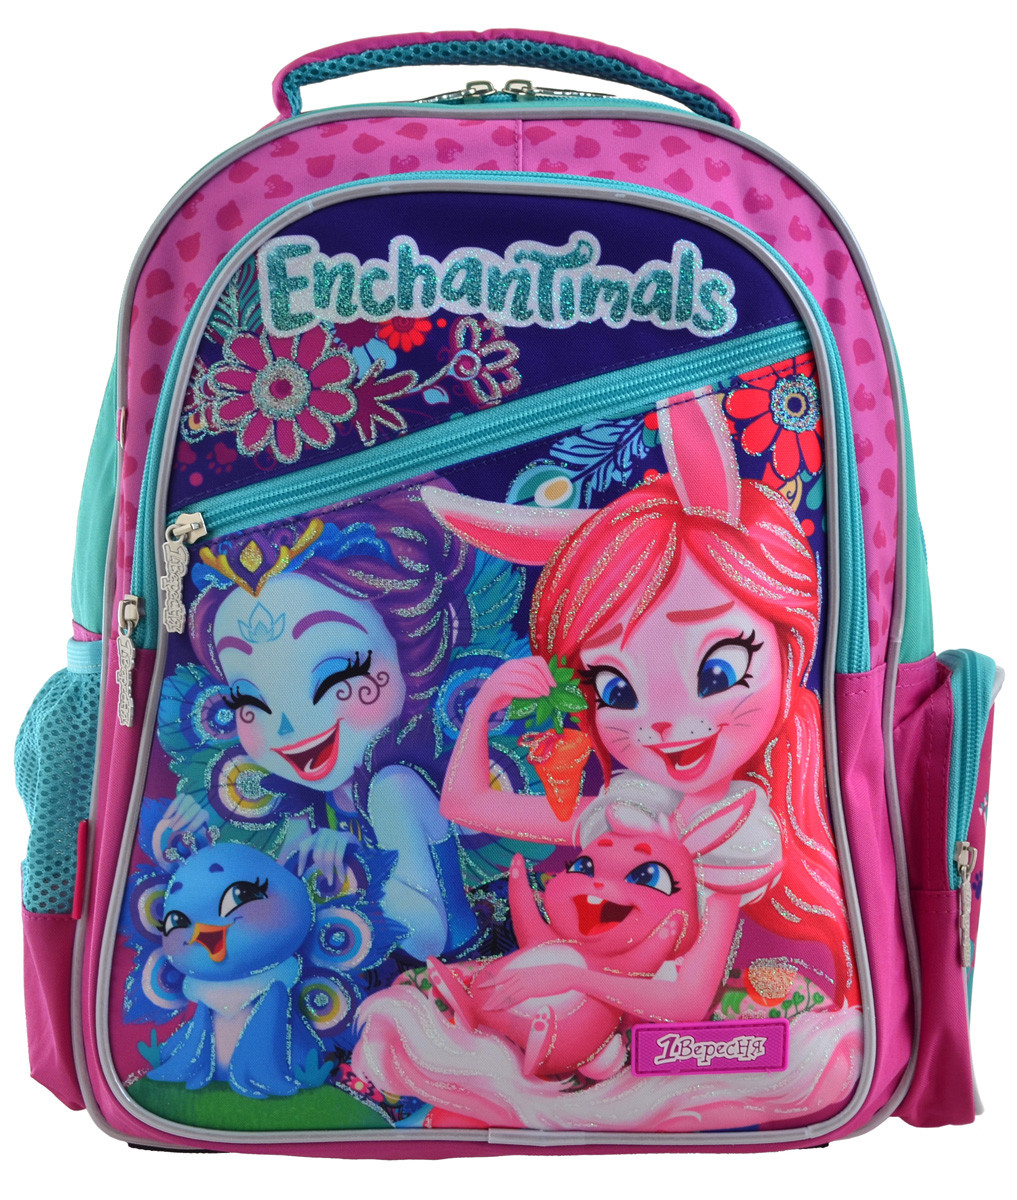 Рюкзак школьный 1 Вересня S-23 Enchantimals+Подарок 3 месяца пользован .